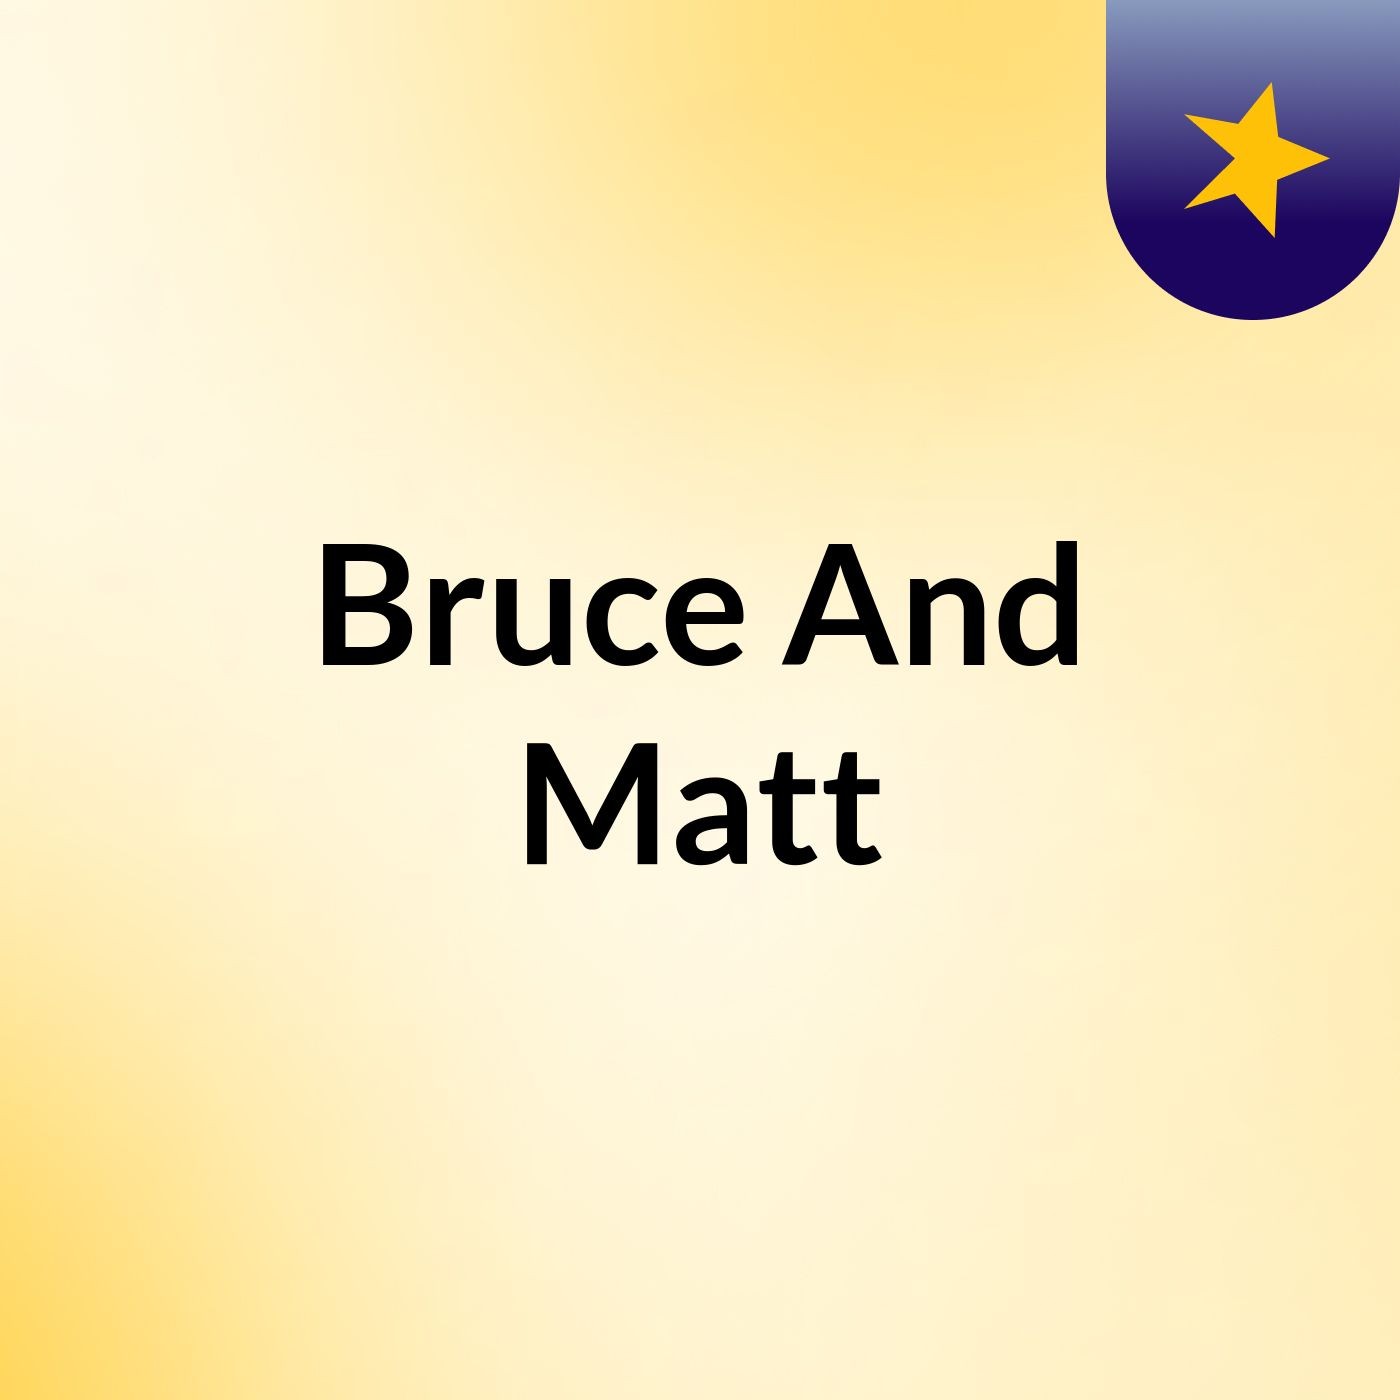 Bruce And Matt